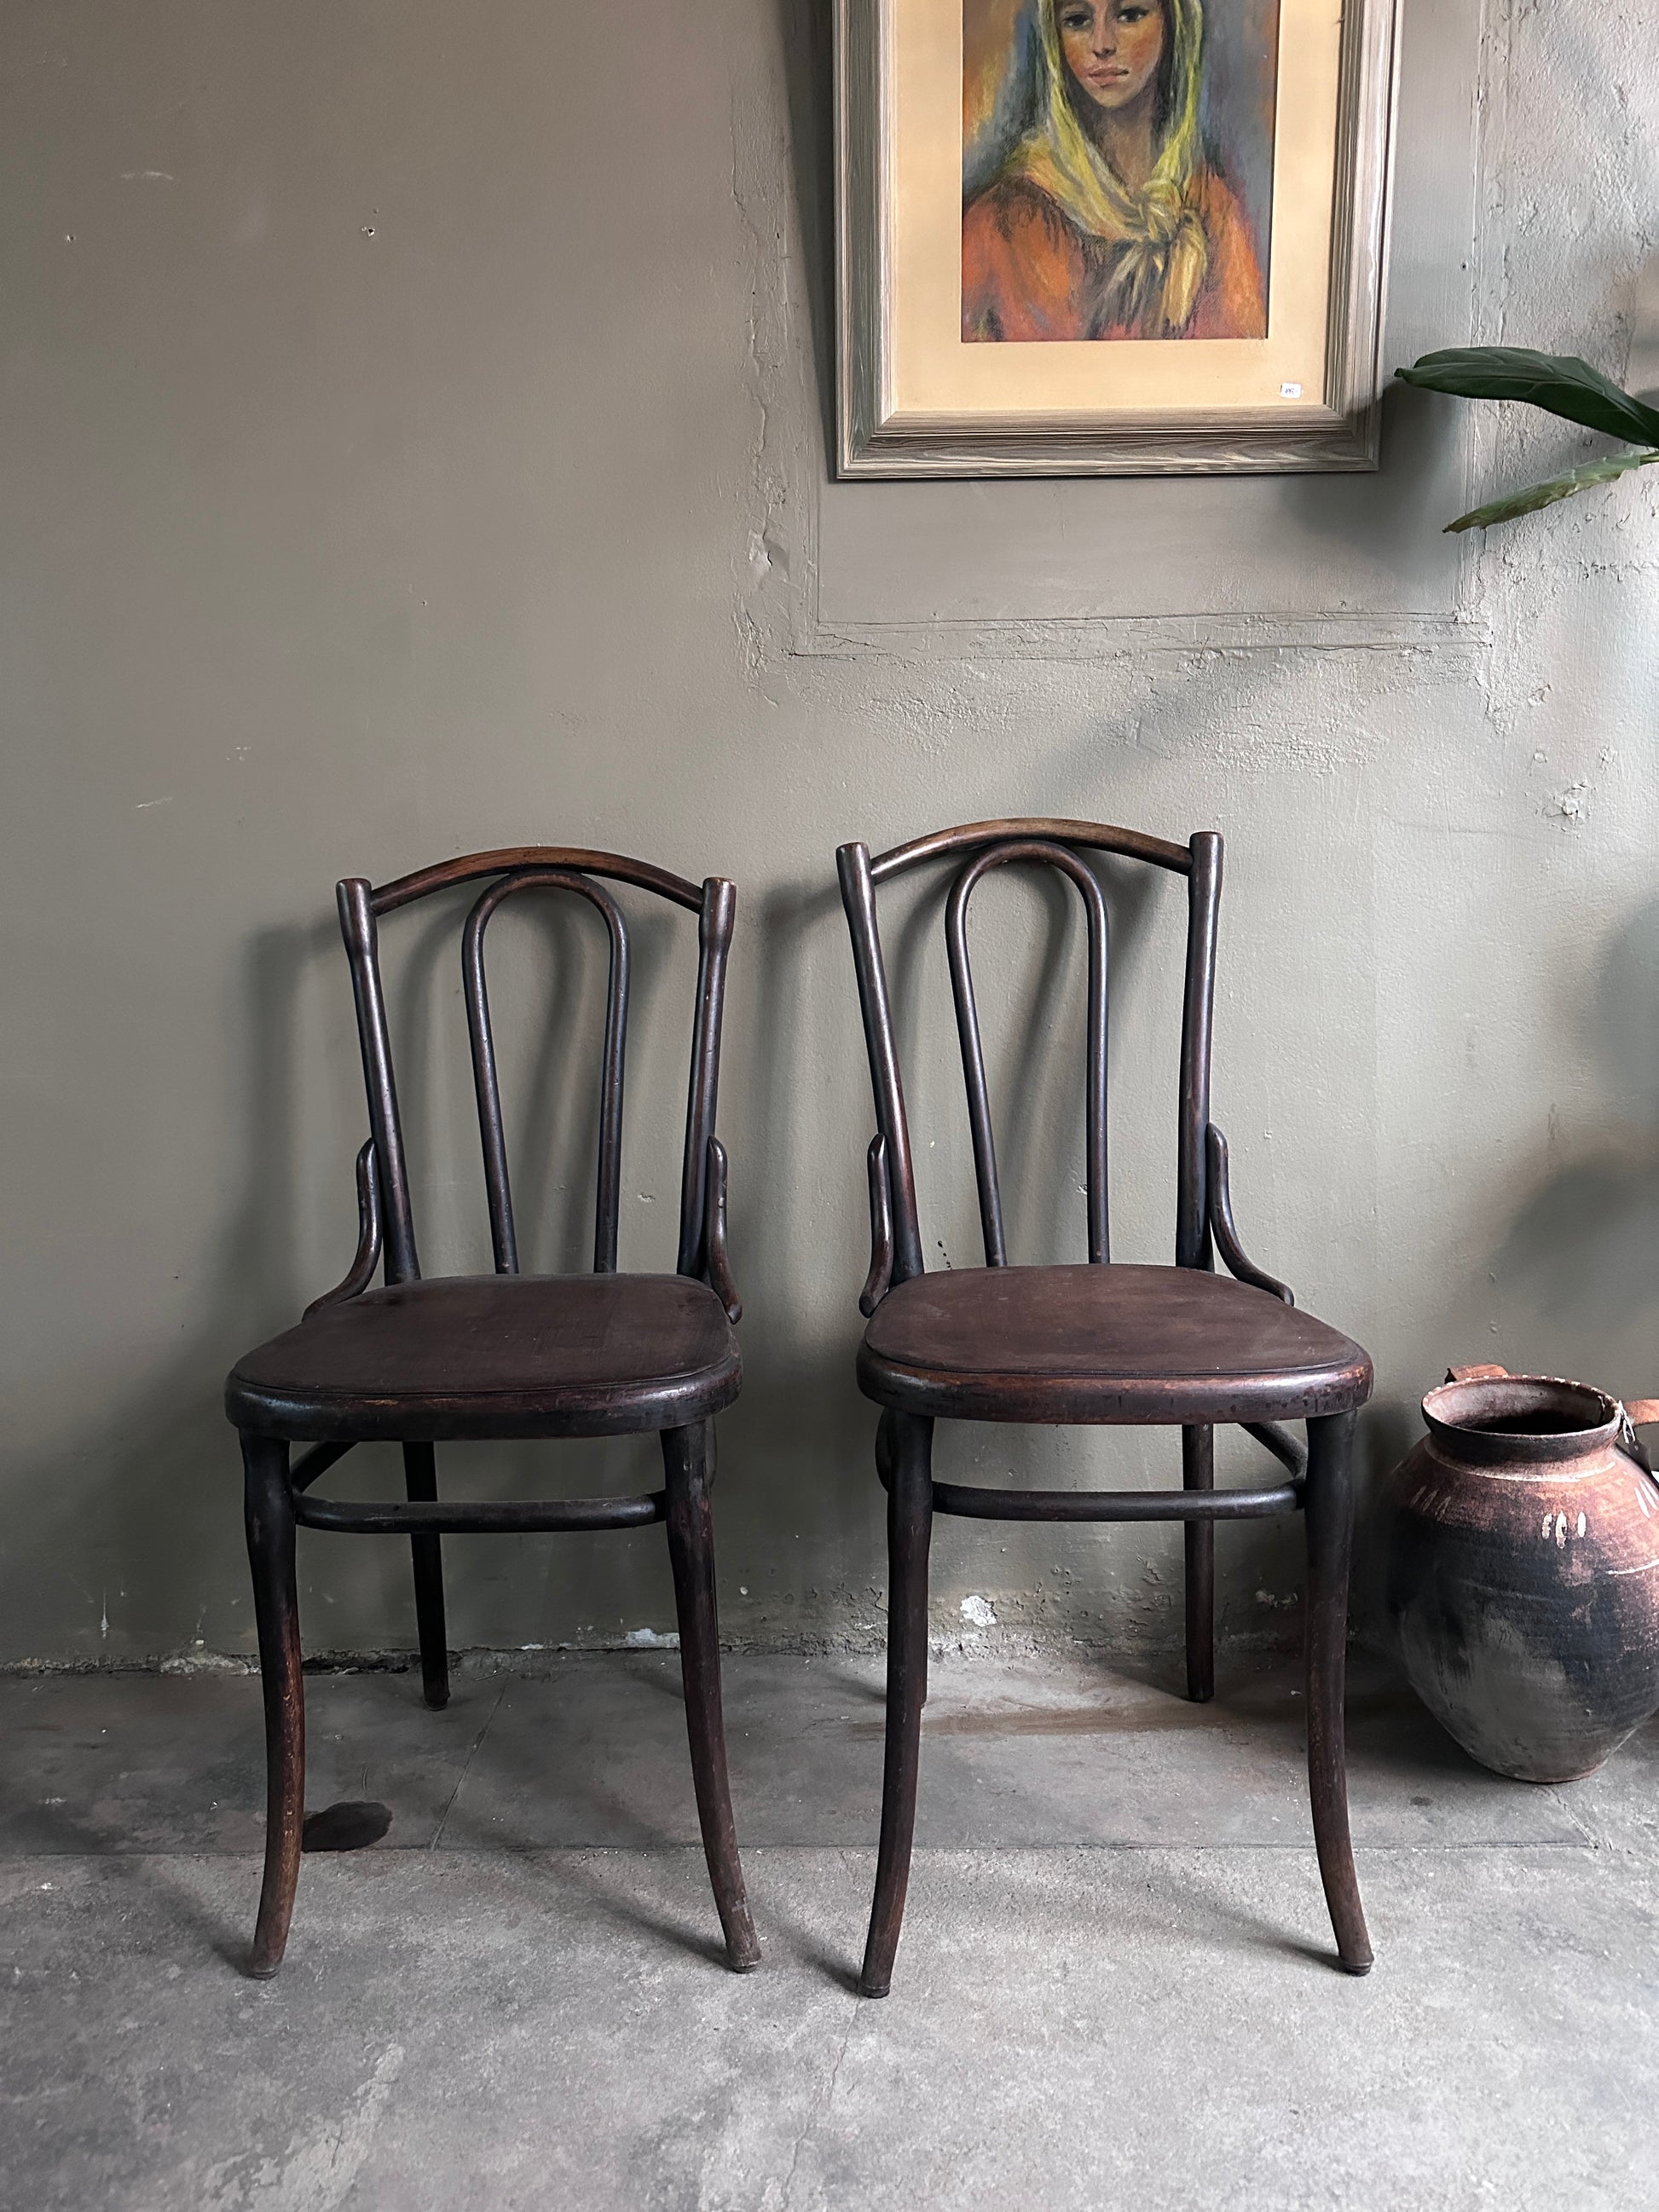 2 st gamla stolar i mörkt trä. Bilden är tagen rakt framifrån. På golvet  bredvid står en urna och en tavla hänger på väggen. 